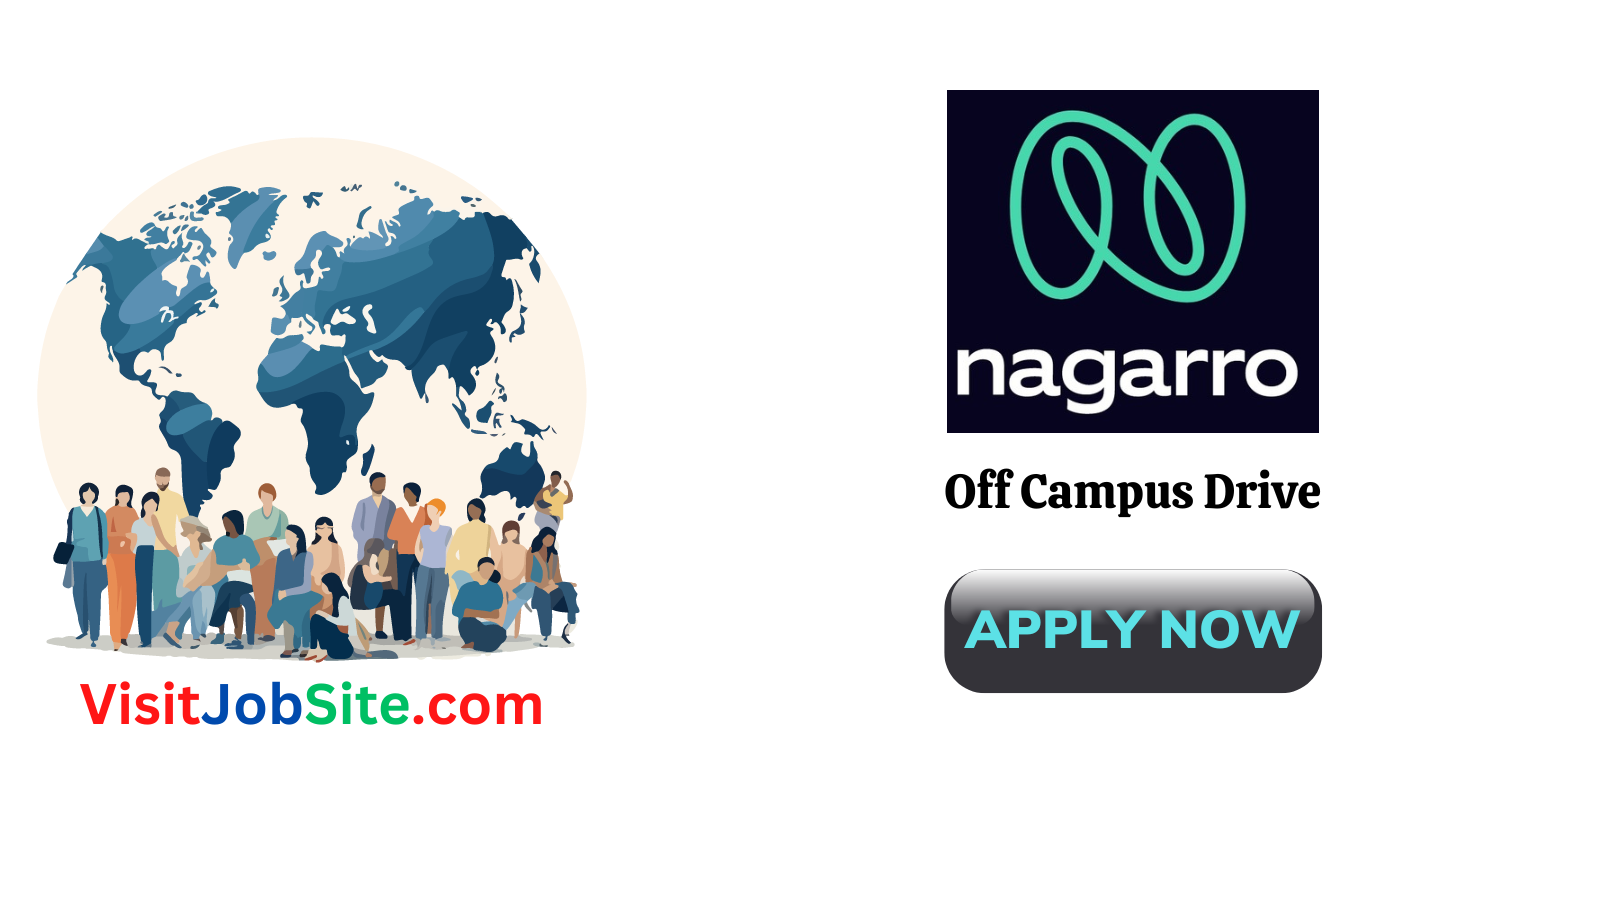 nagarro Off Campus Drive